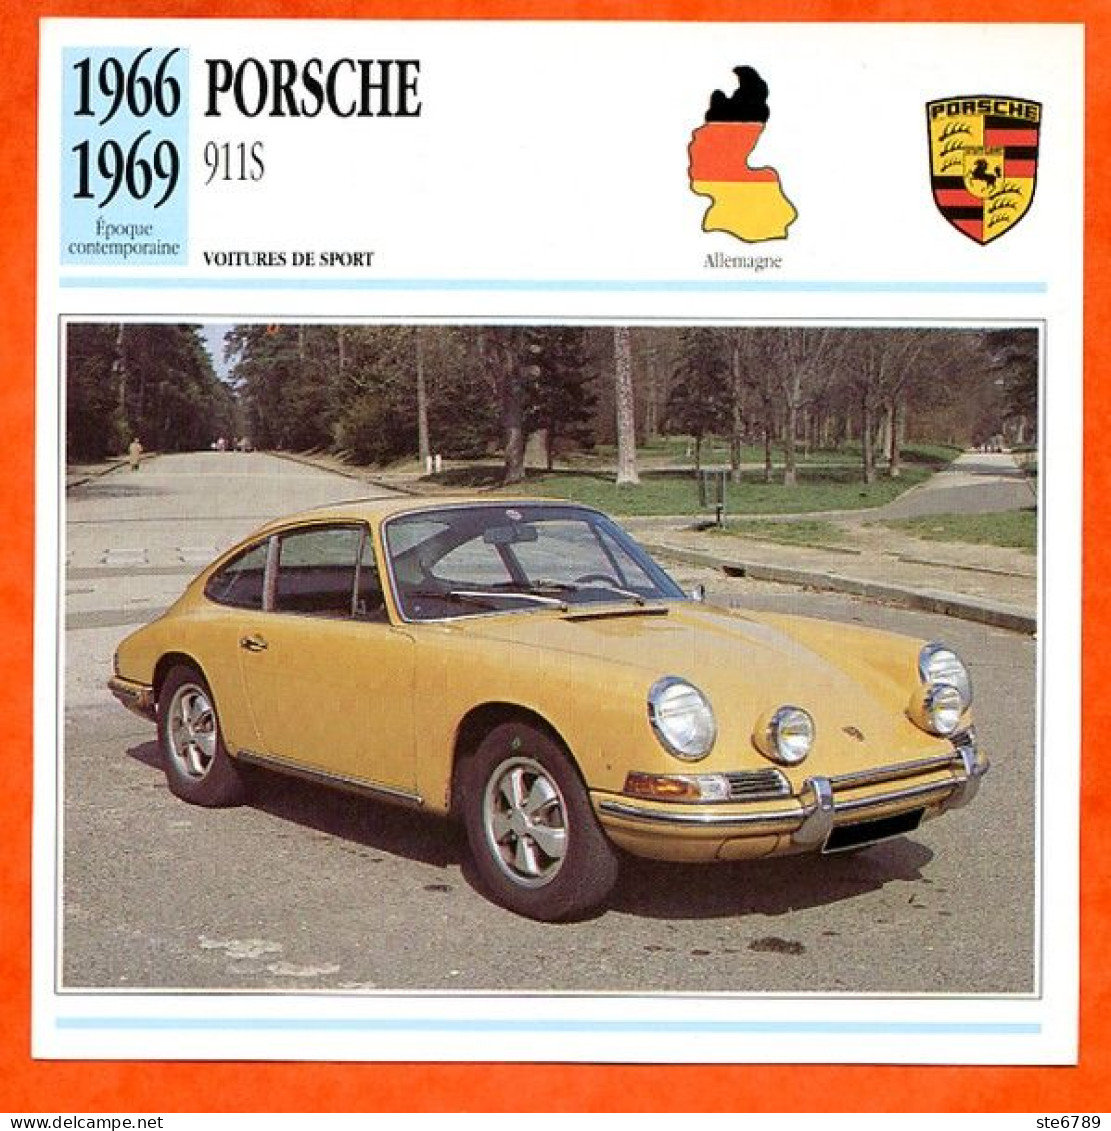 PORSCHE 911 S 1966 Voiture De Sport Allemagne Fiche Technique Automobile - Voitures